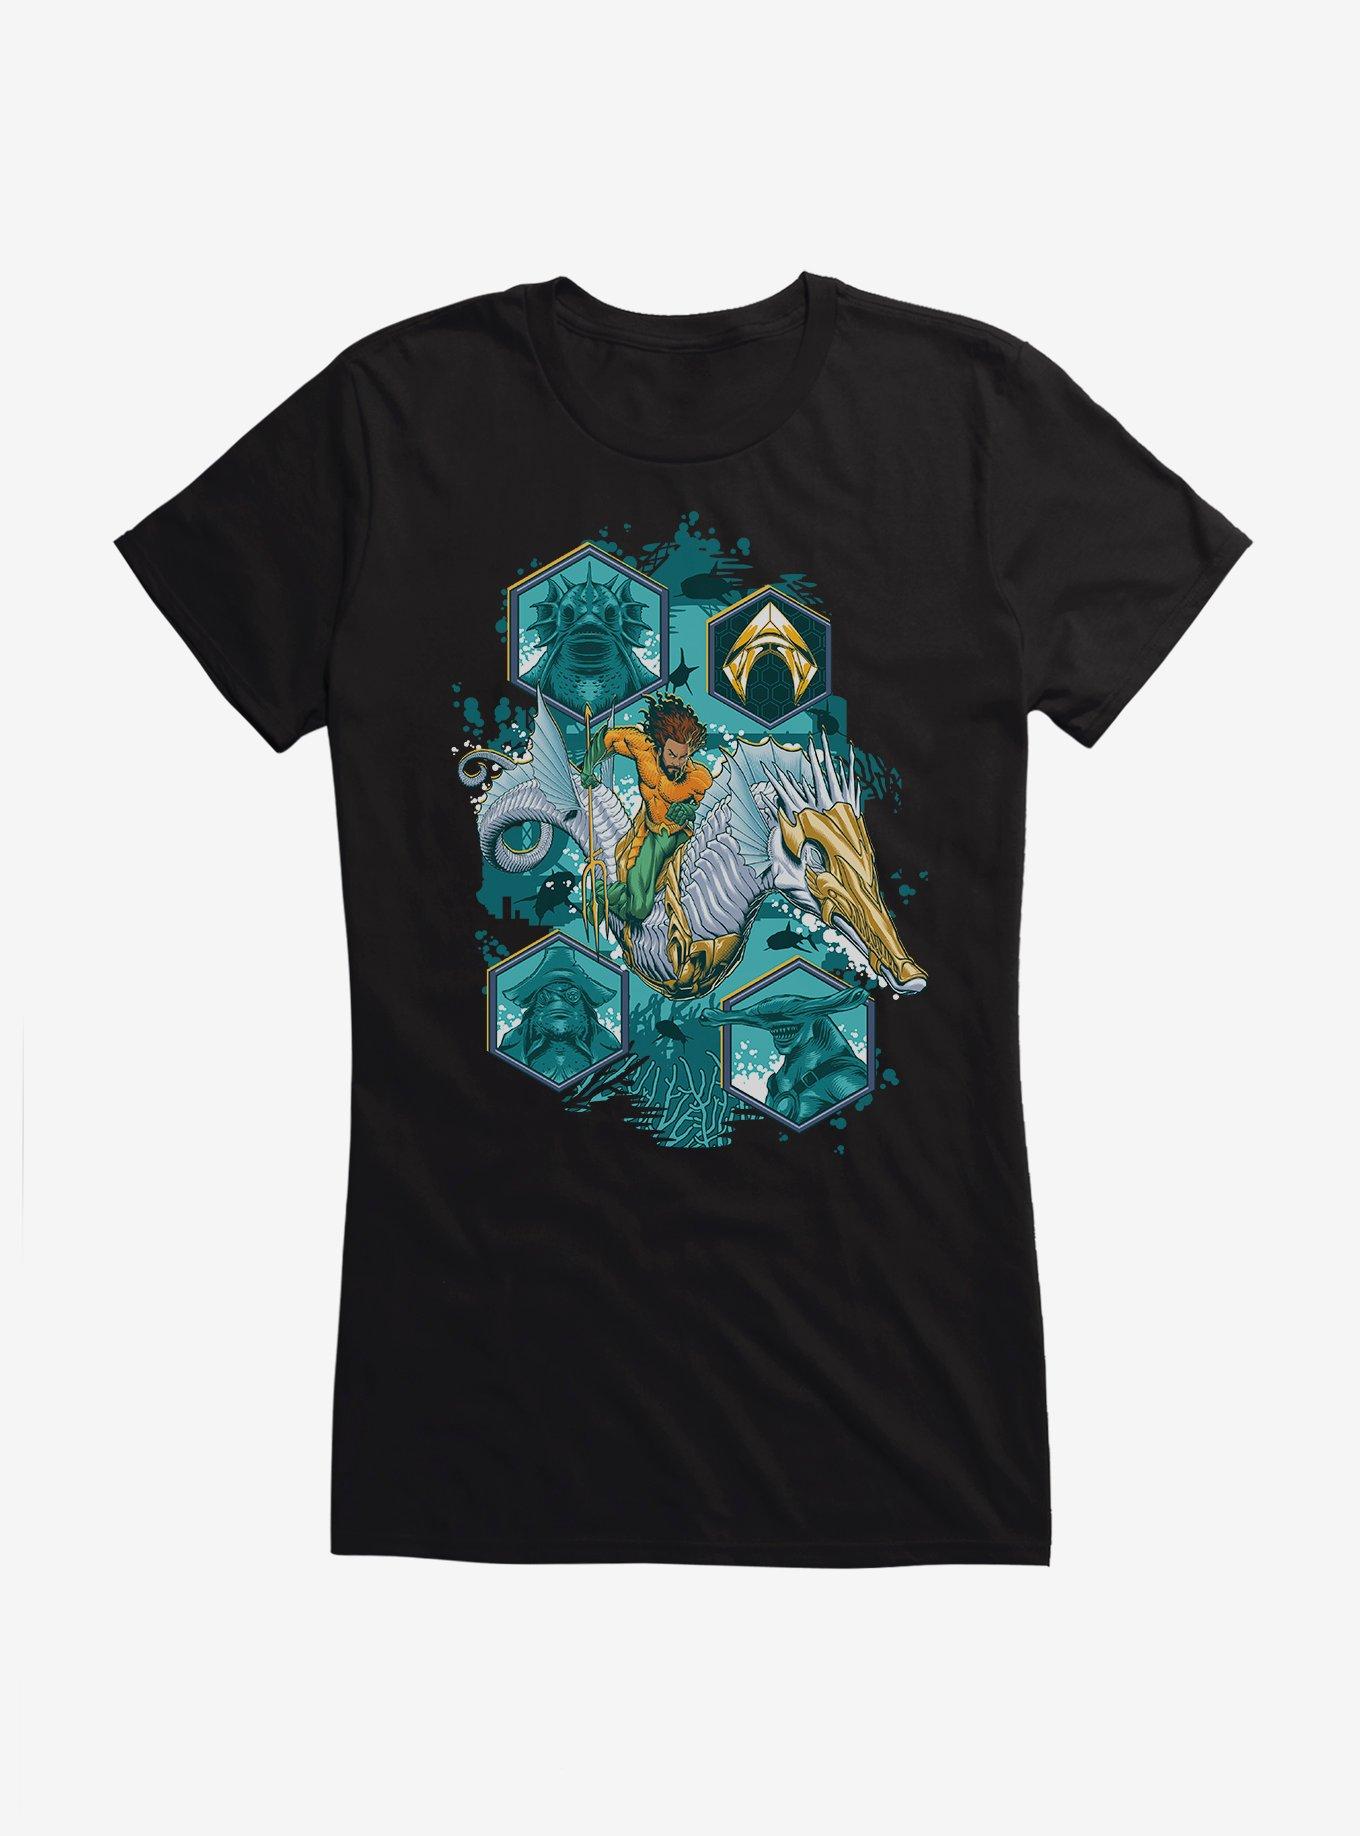 Aquaman Collage Symbols Girls T-Shirt